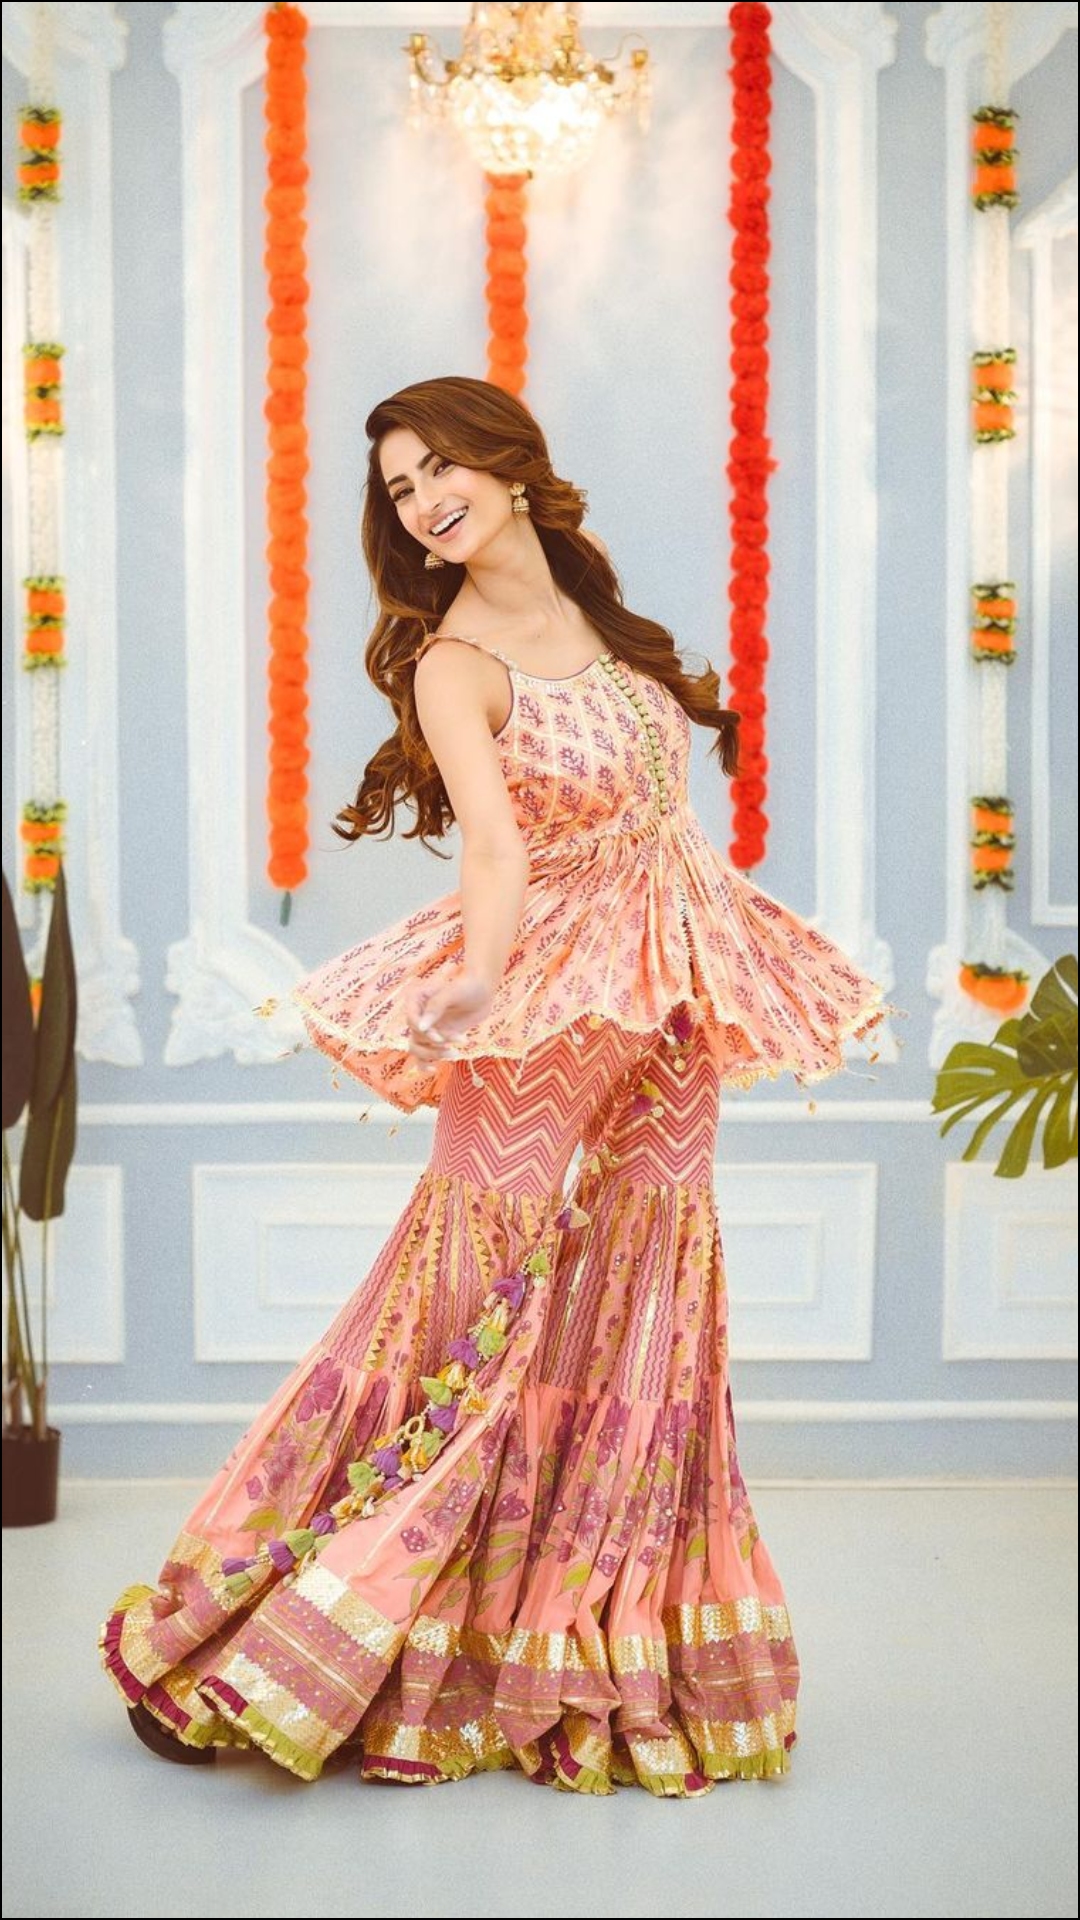 दिवाली पर दिखना है सबसे खूबसूरत, तो आप पलक तिवारी के जैसी ड्रेसेस पहनें